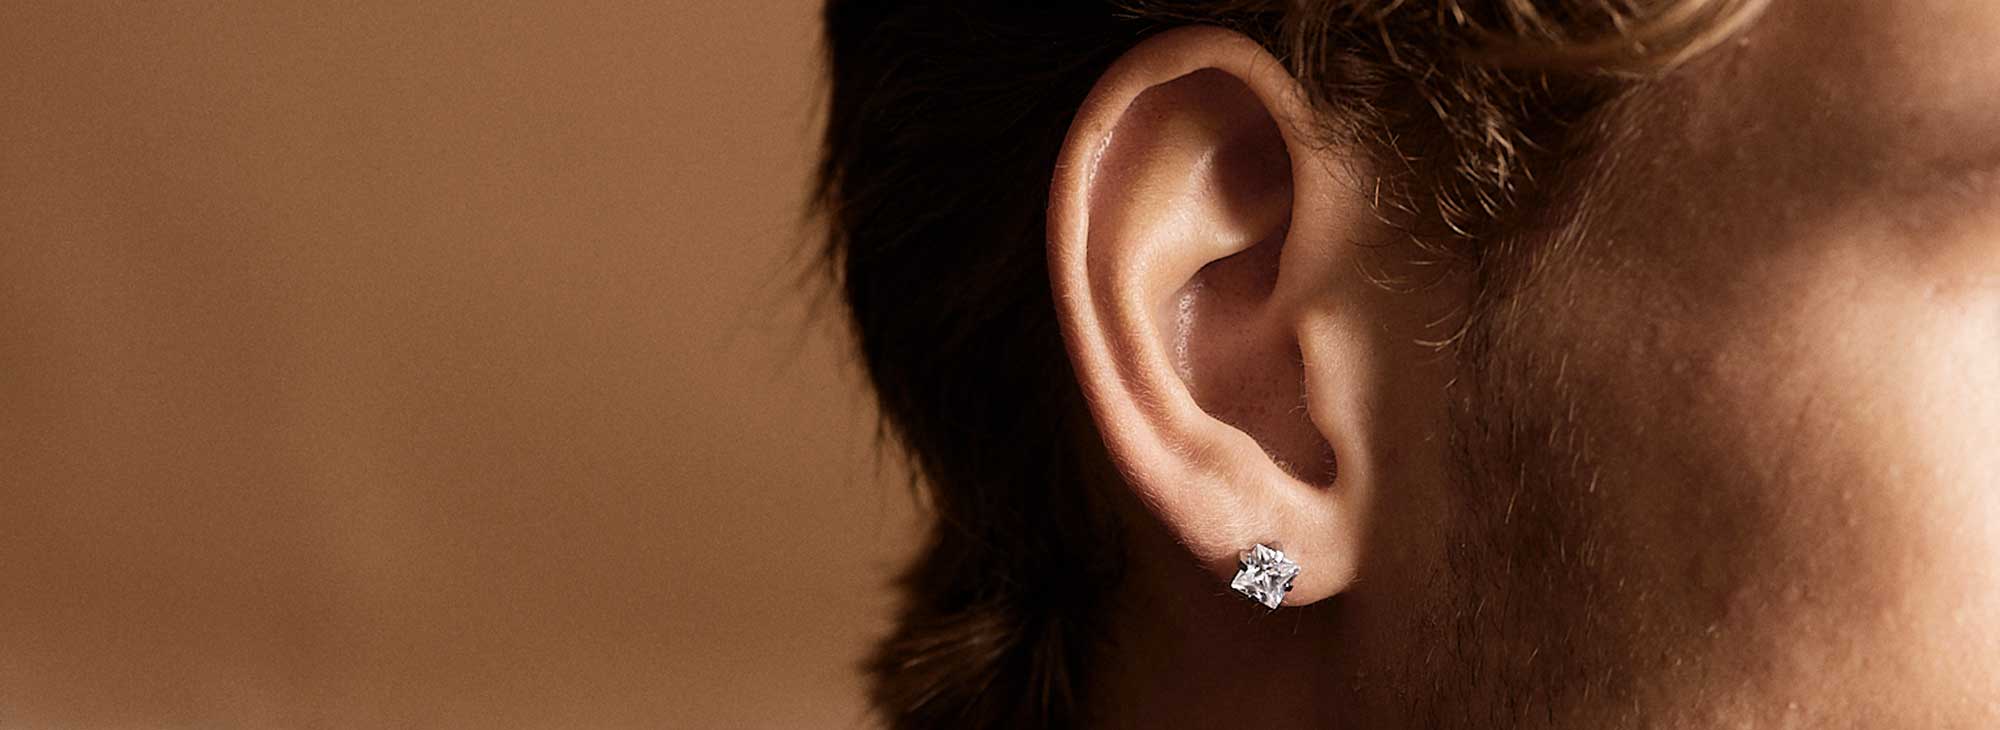 Skin friendly earrings for men